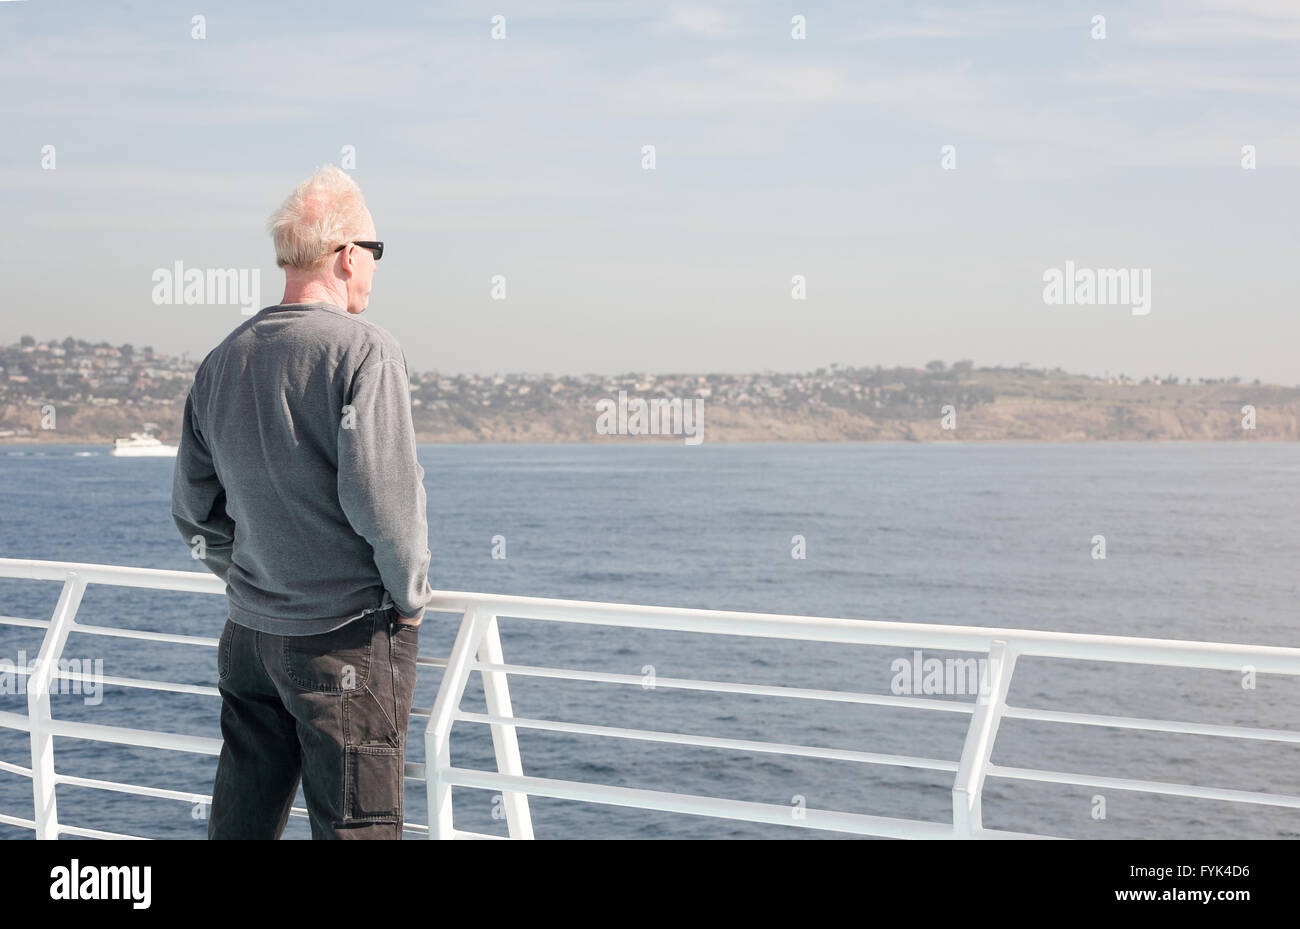 La mezza età uomo vestito casualmente indossando occhiali da sole sorge accanto ad una ringhiera di bianco su una barca che guarda all'acqua Foto Stock